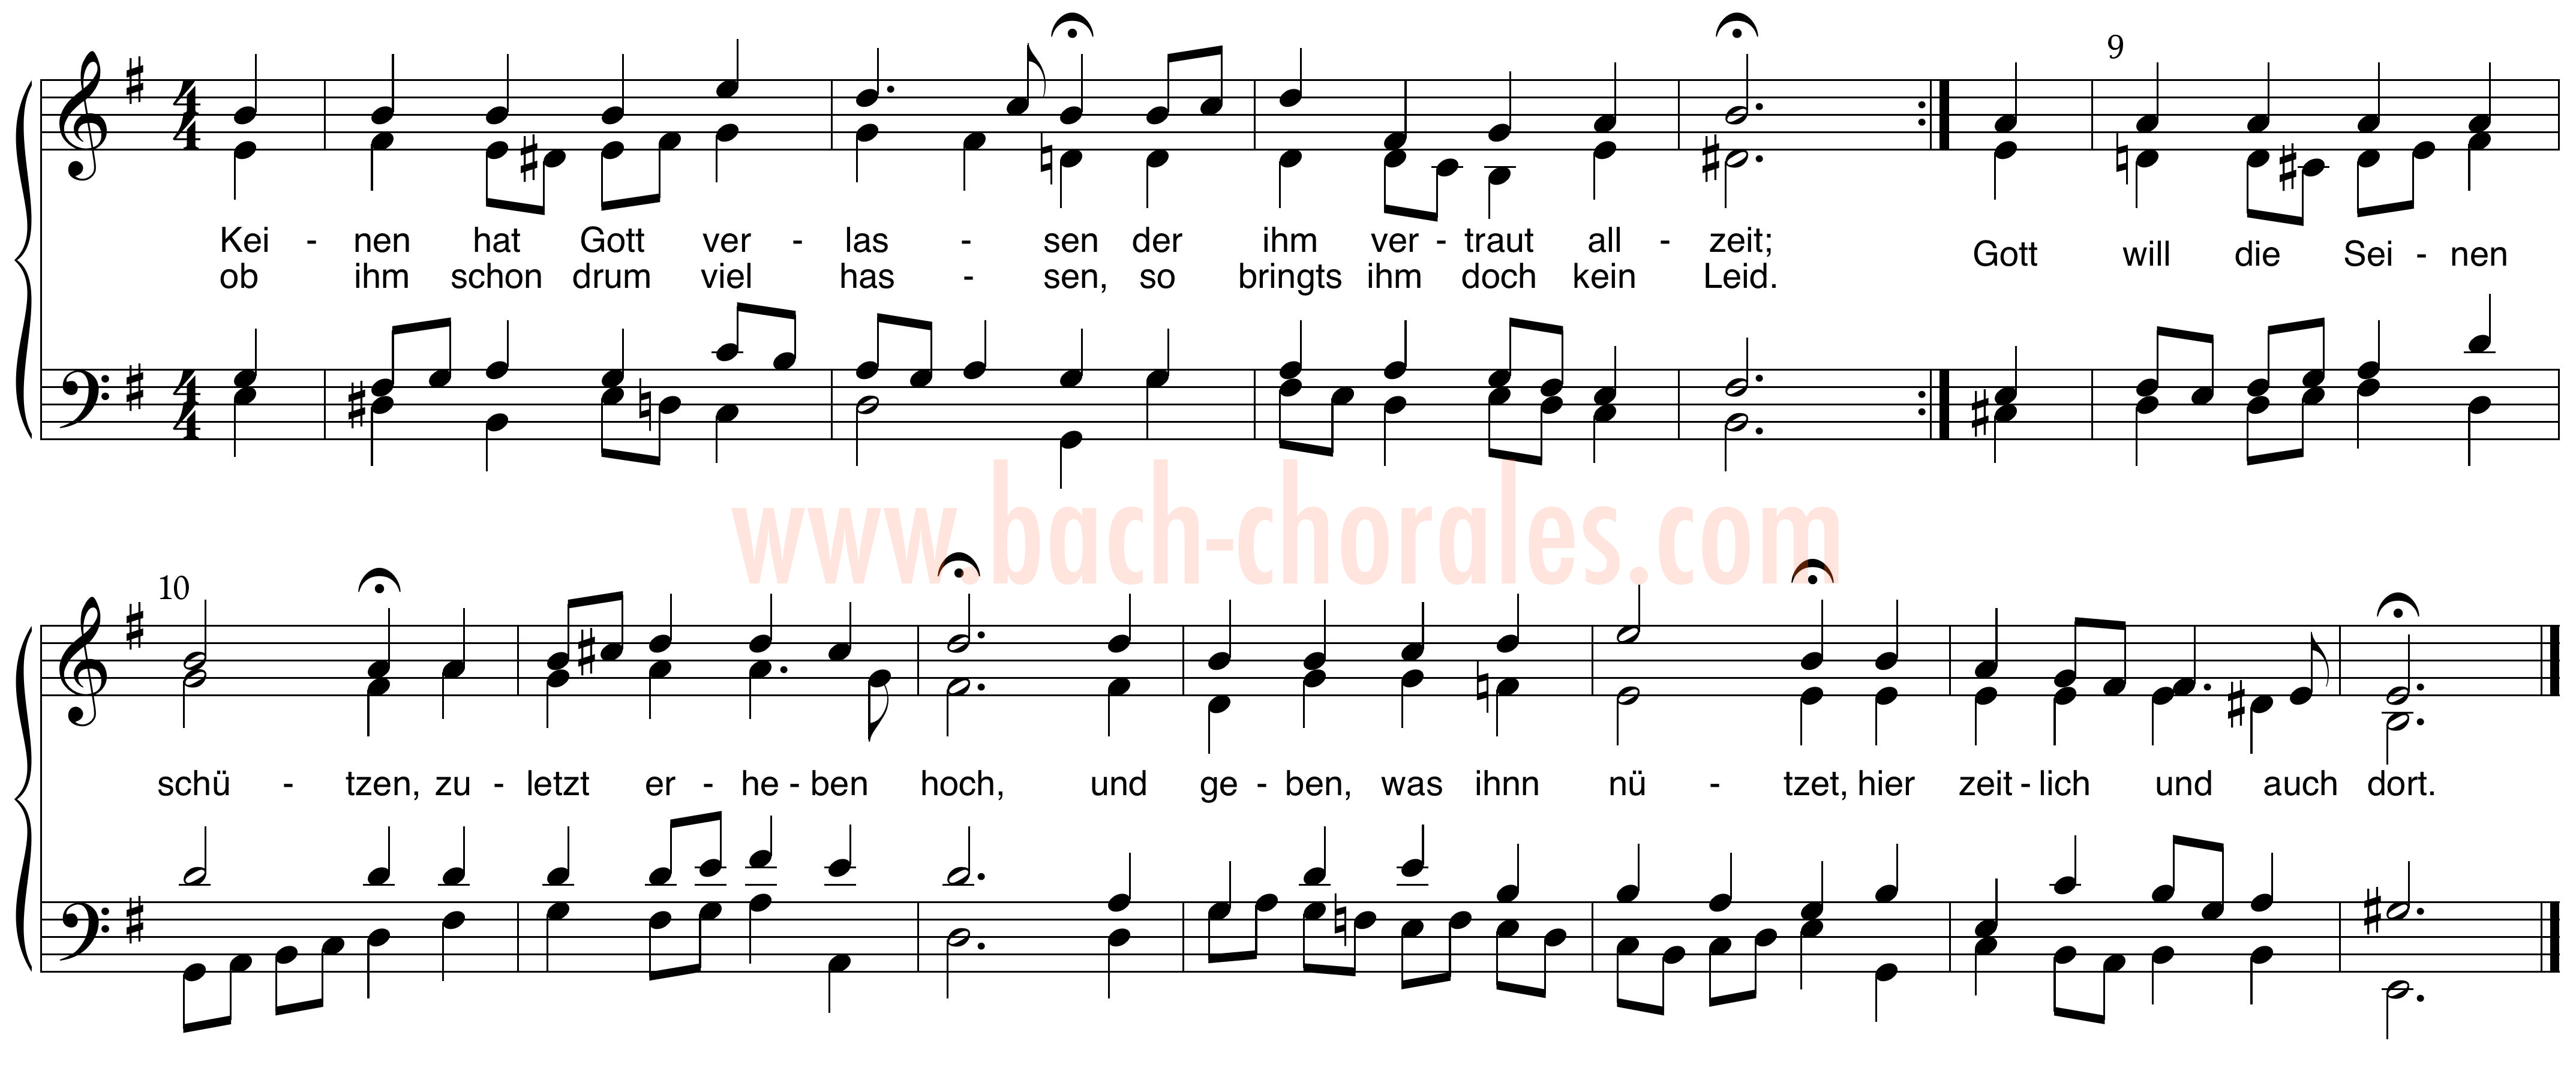 notenbeeld BWV 369 op https://www.bach-chorales.com/